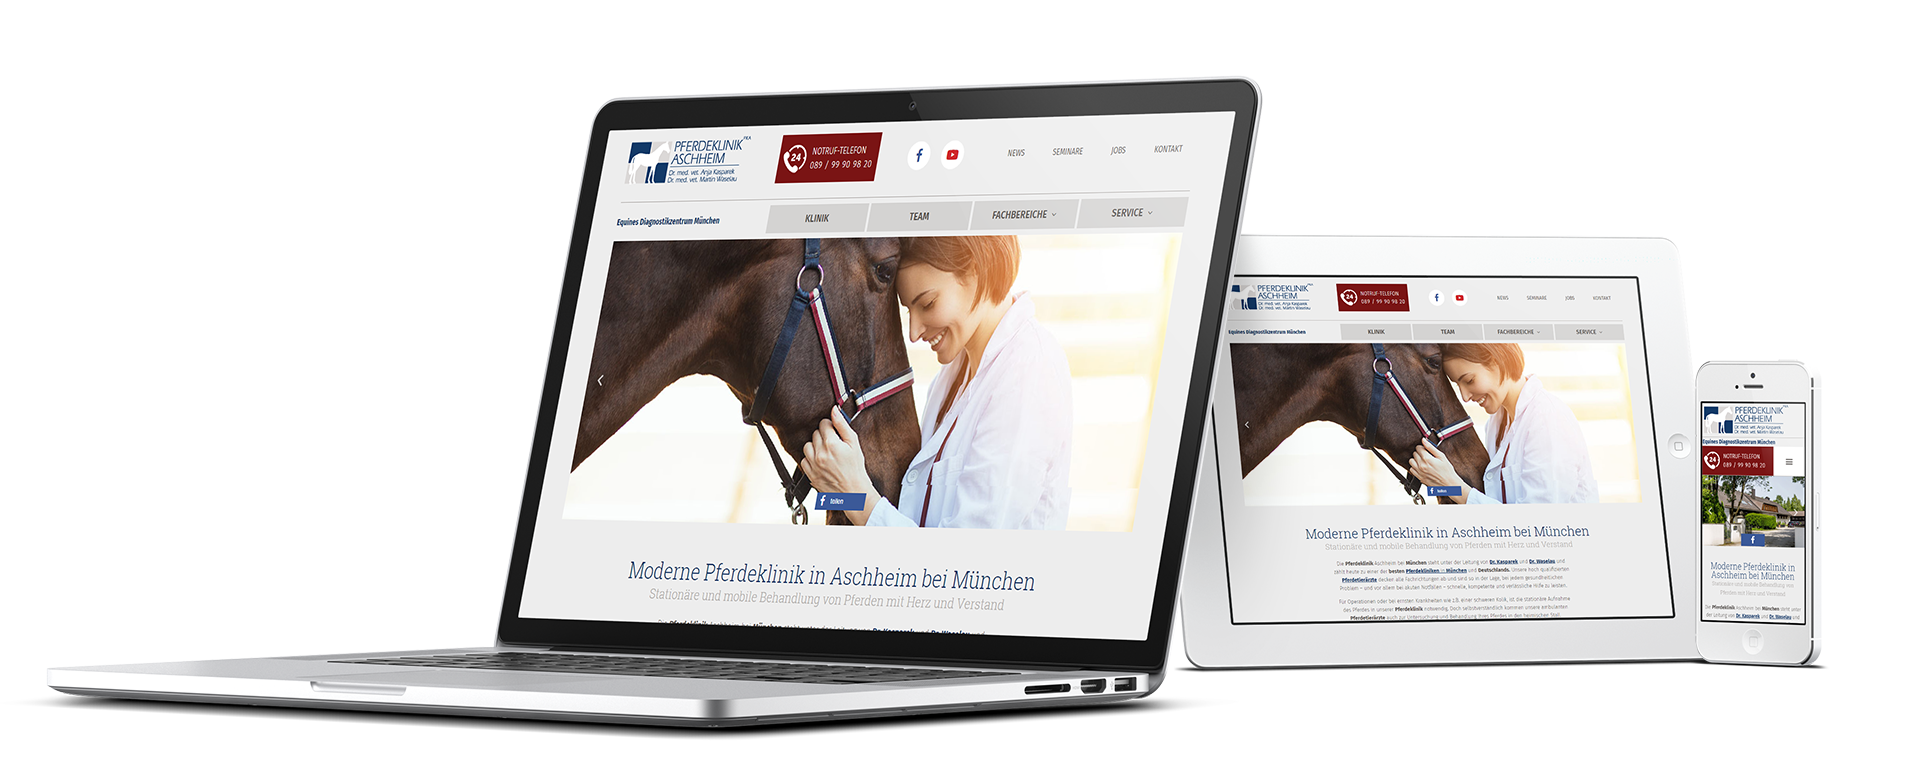 Mockup der neuen Webseite der Pferdeklinik Aschheim auf verschiedenen Endgeräten